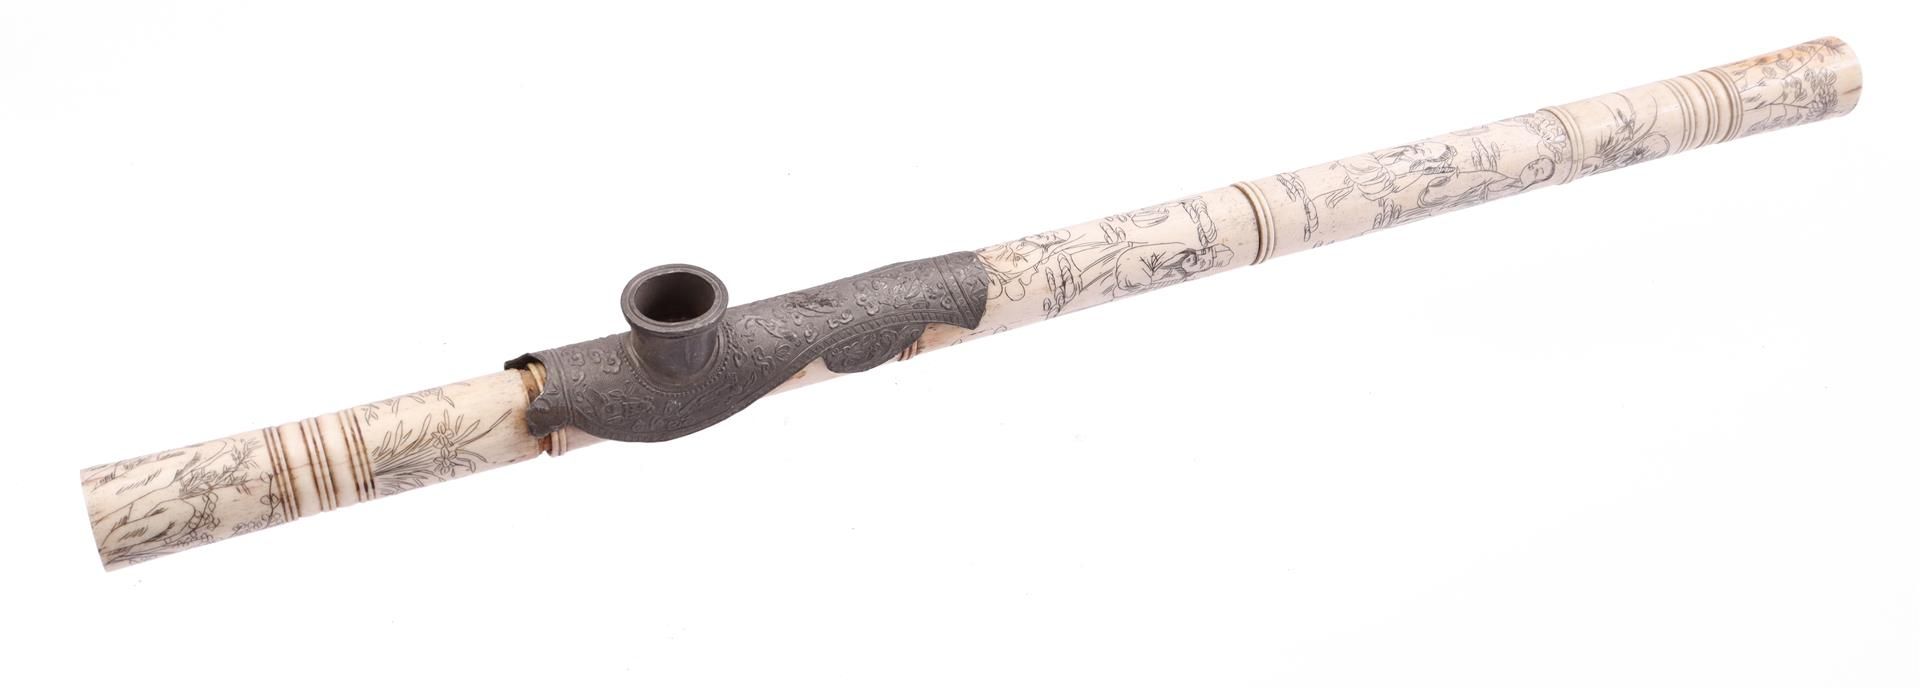 Opium pipe